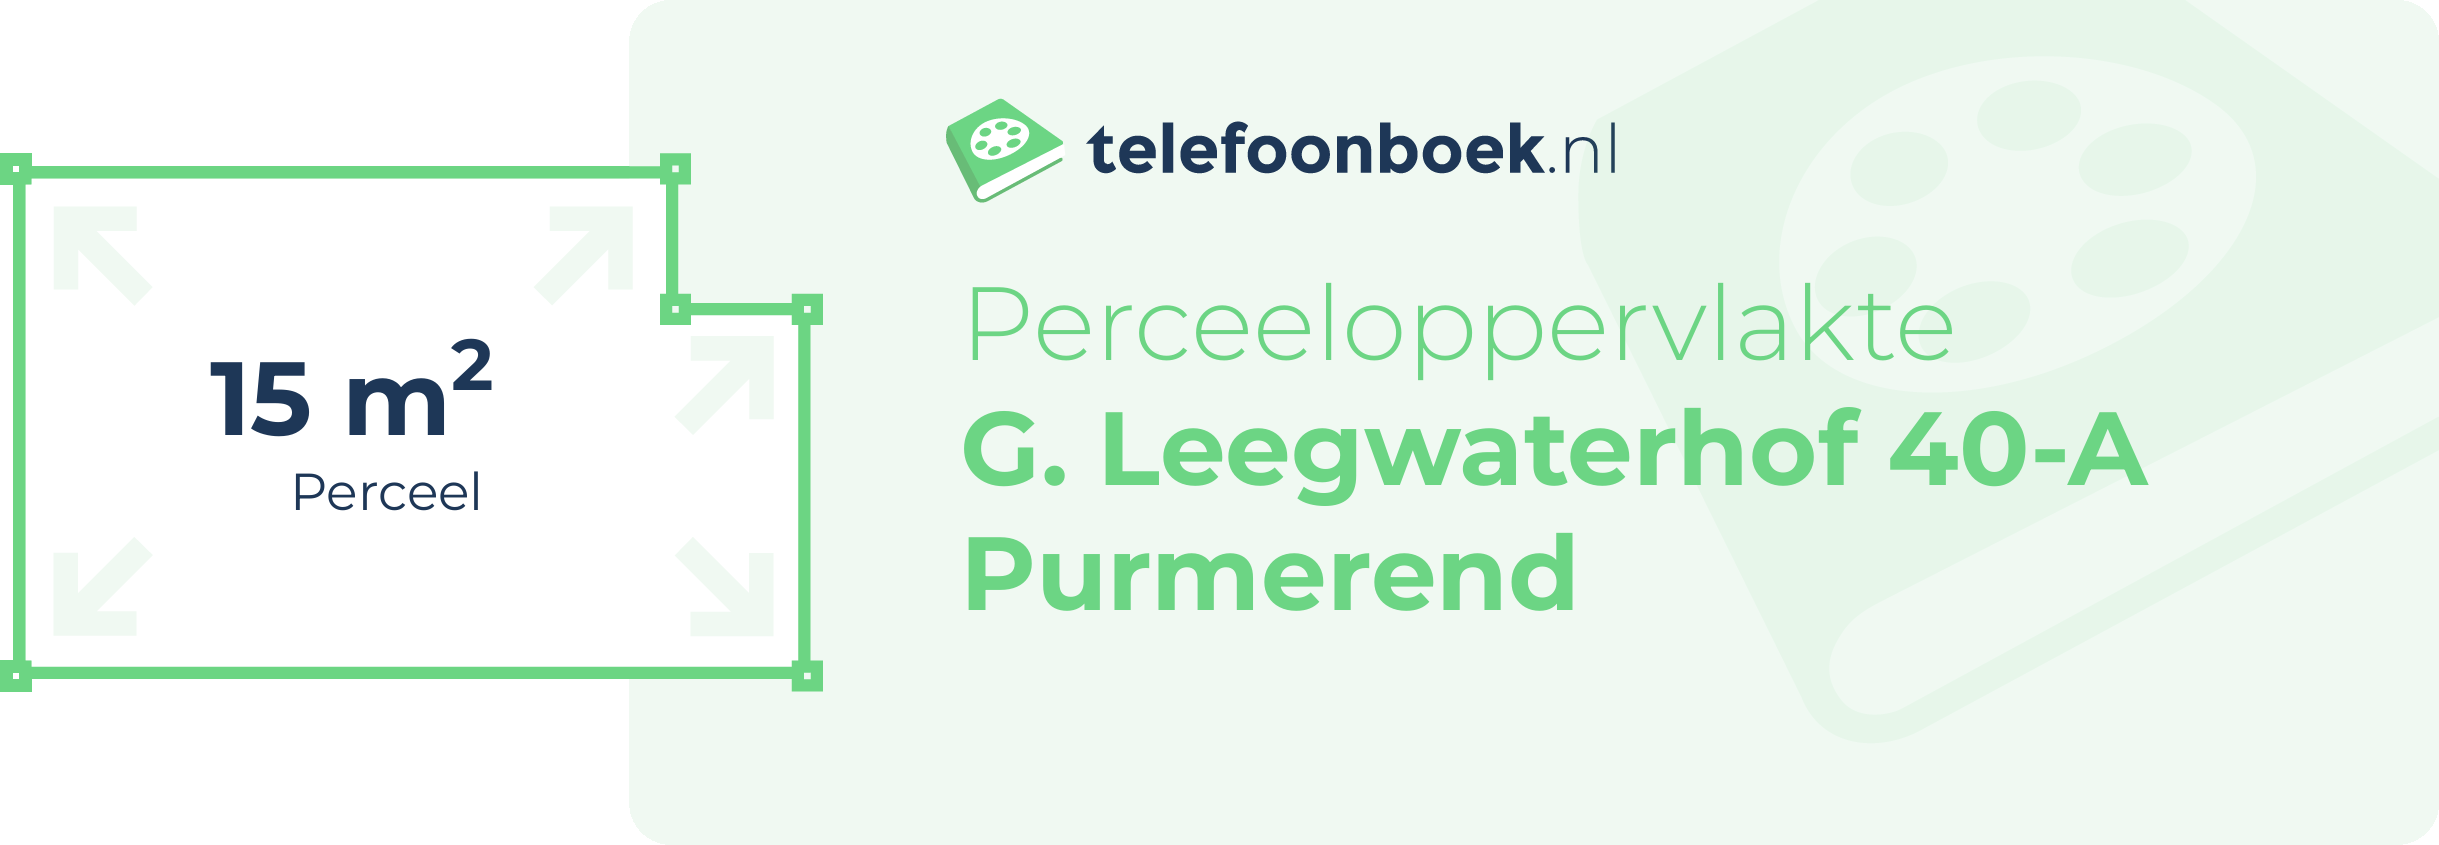 Perceeloppervlakte G. Leegwaterhof 40-A Purmerend